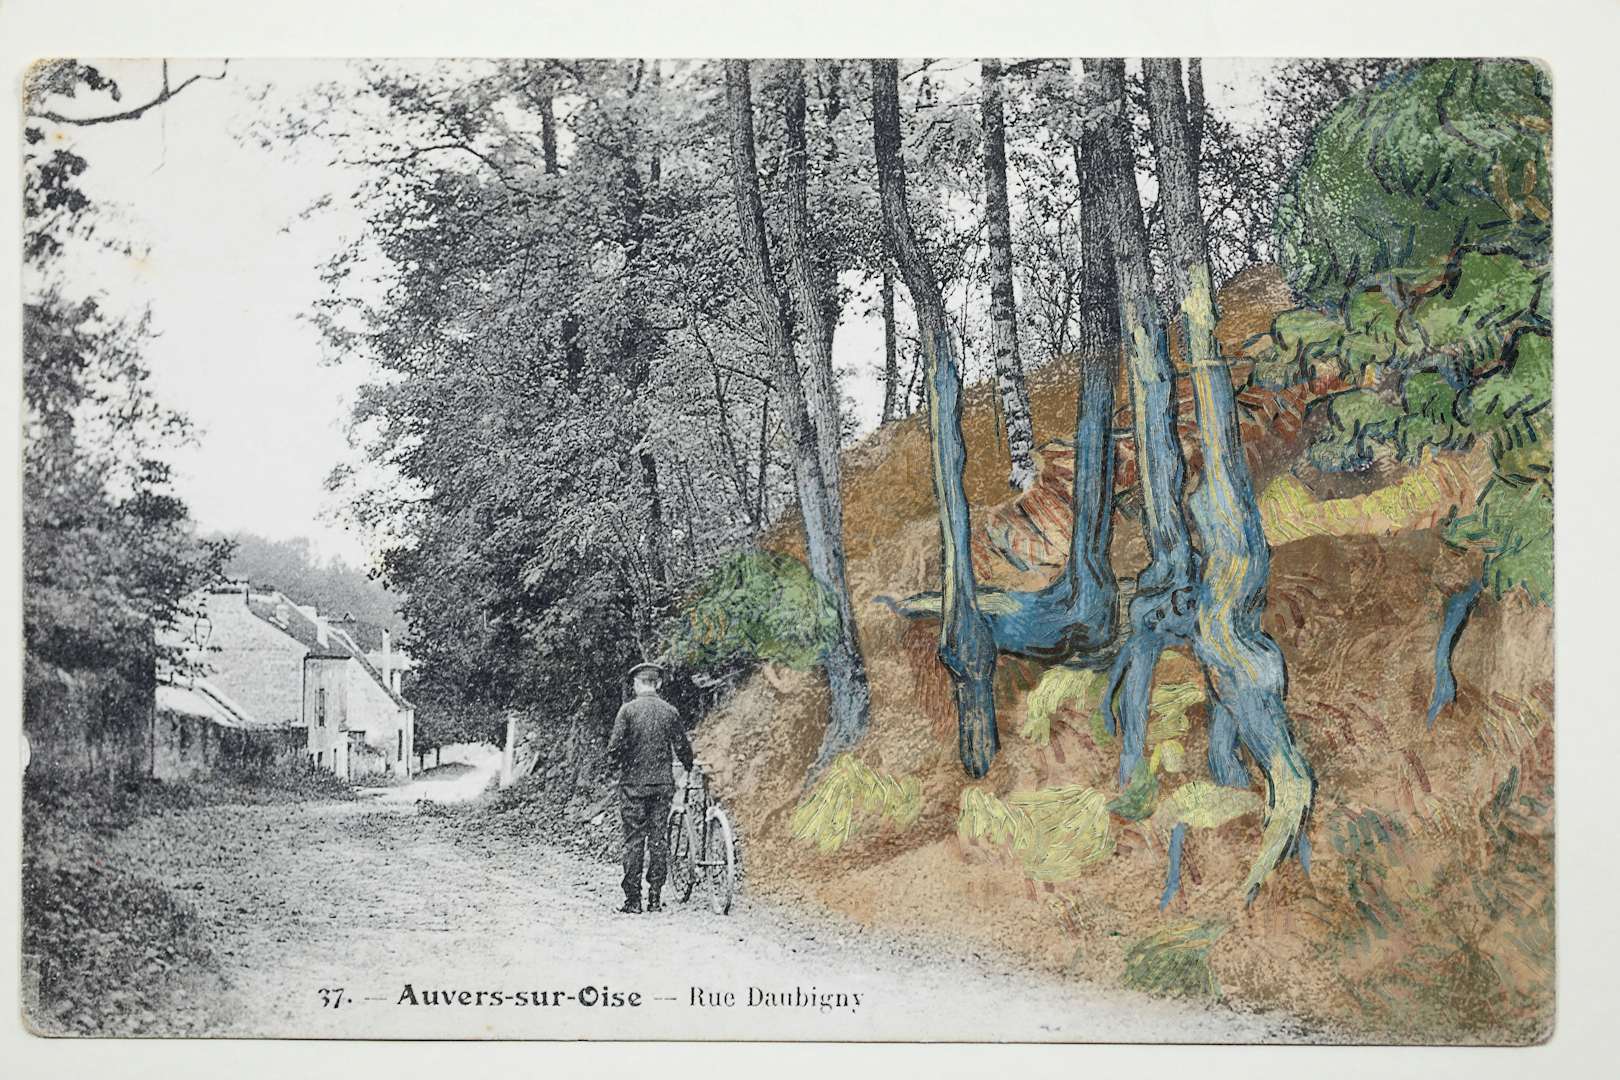 ゴッホ最後の作品 木の根と幹 が描かれた場所を特定 非常に信憑性高い 美術手帖